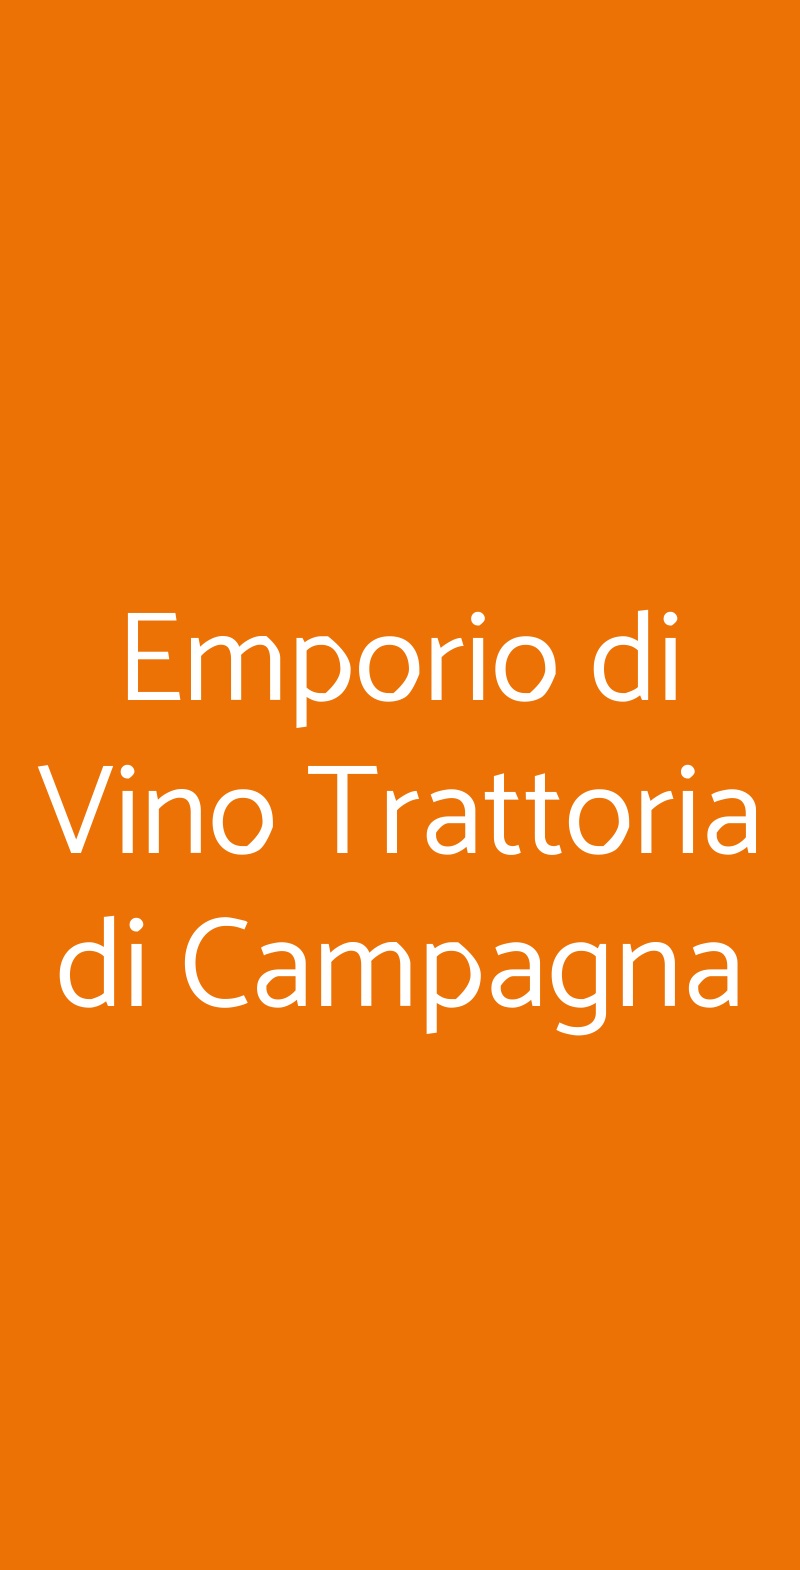 Emporio di Vino Trattoria di Campagna Montu' Beccaria menù 1 pagina